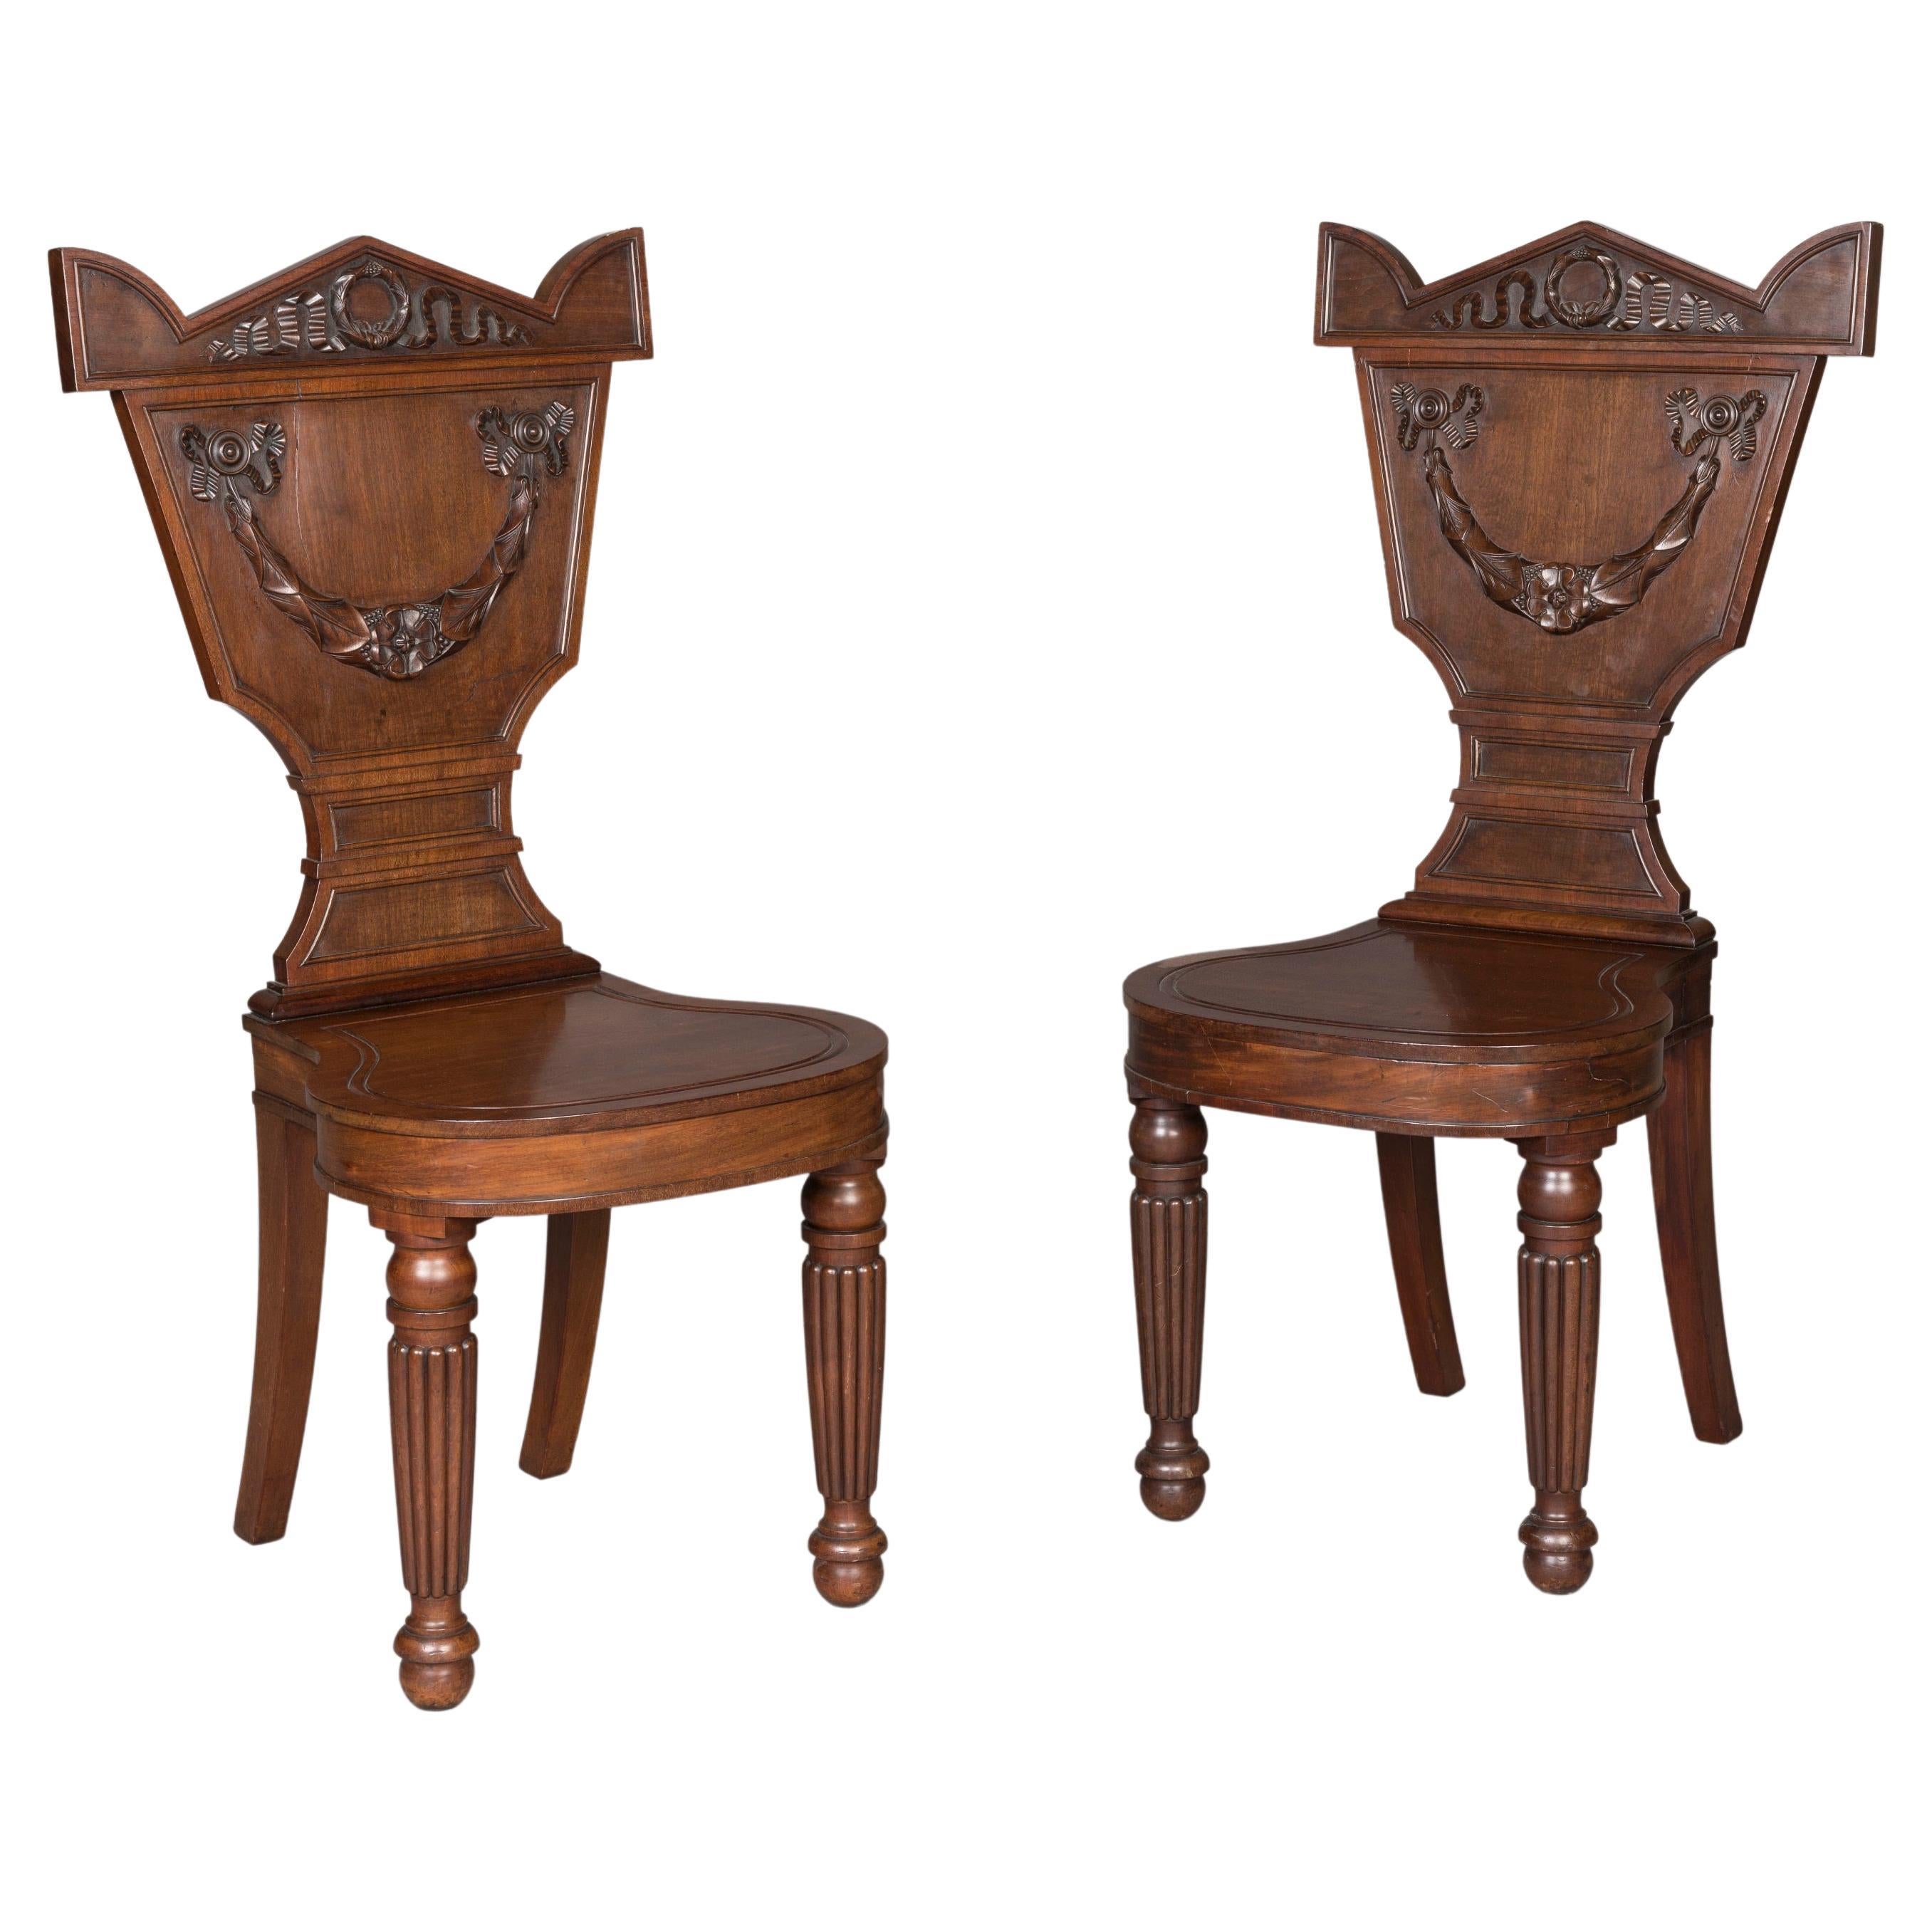 Paar geschnitzte Mahagoni-Stühle aus der georgianischen Periode des 19. Jahrhunderts